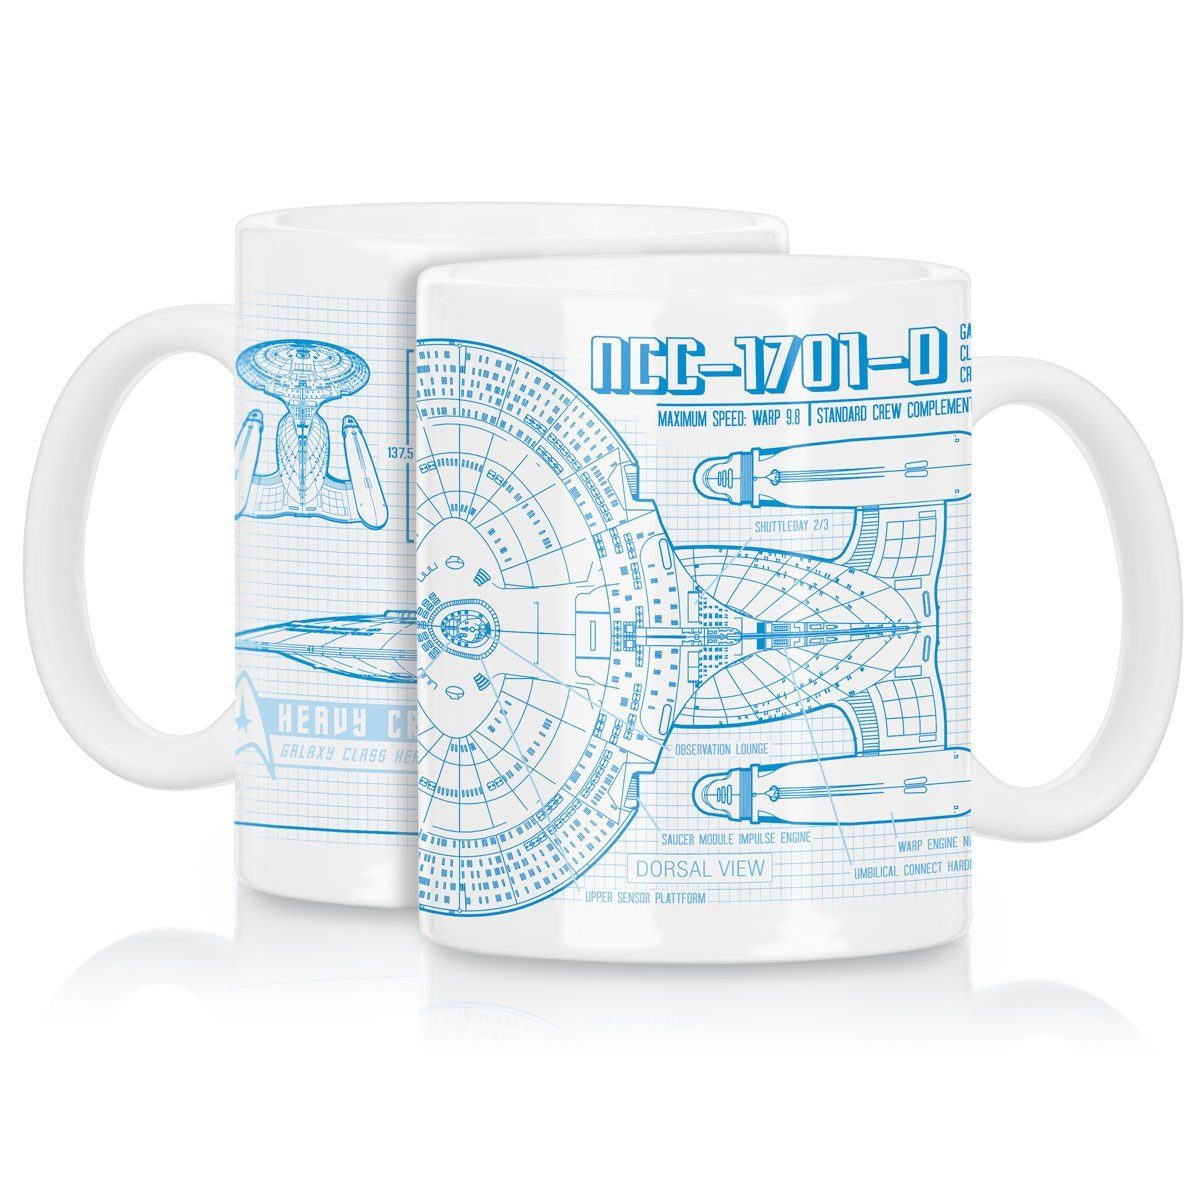 style3 Tasse, Keramik, NCC-1701-D nächste jahrhundert raumschiff trekkie Kaffeebecher Tasse trek das enterprise star